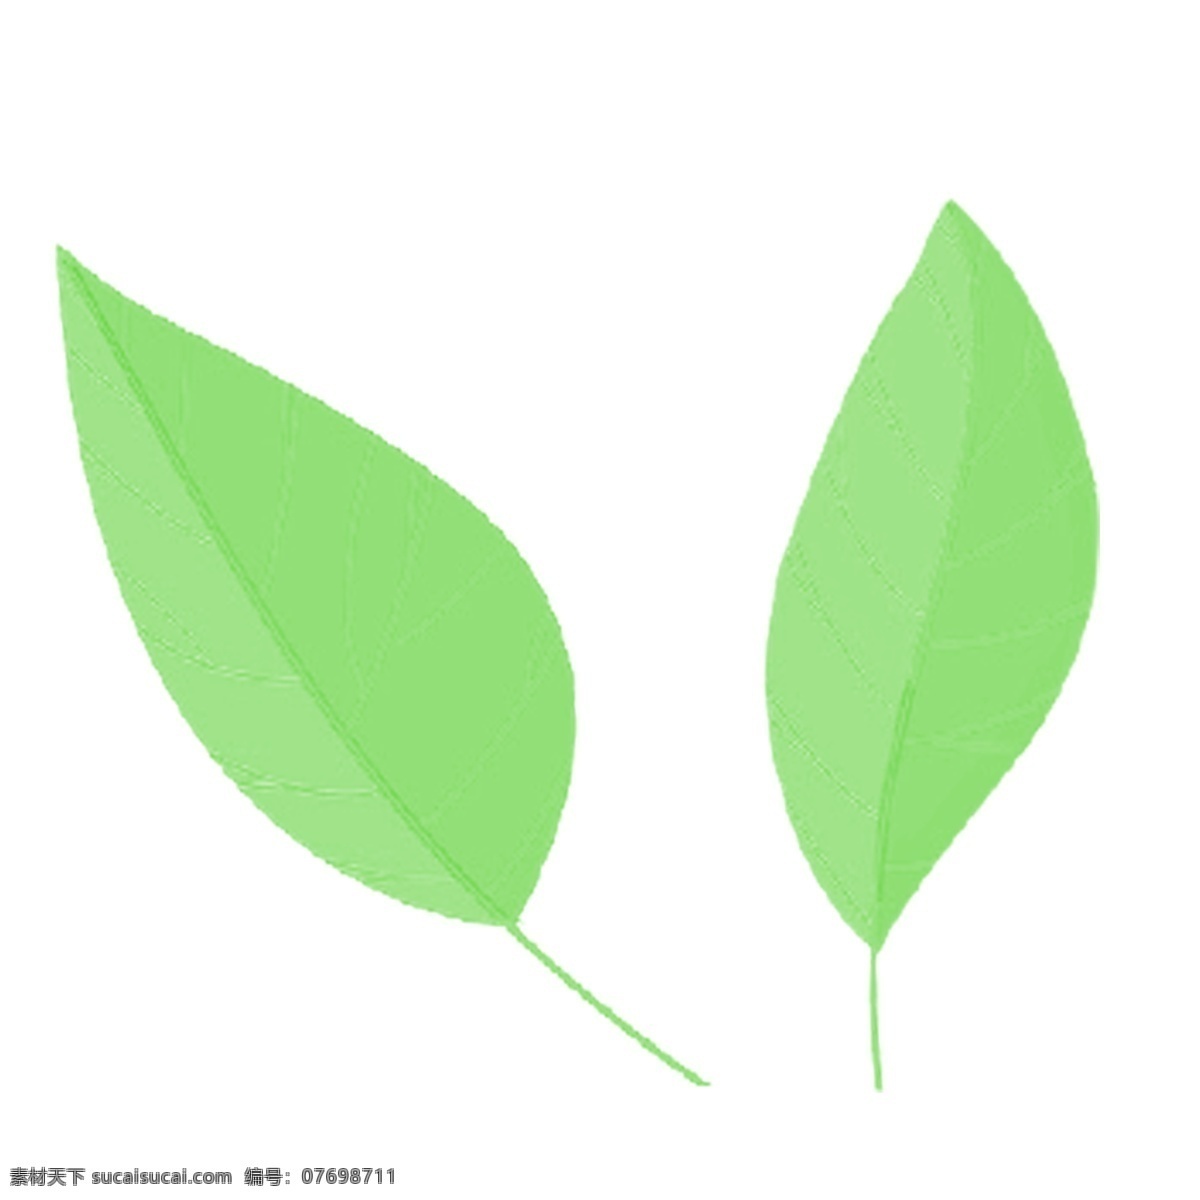 绿色 叶子 免 抠 图 绿色生态植物 绿色植物 生态植物 时尚的叶子 健康植物 绿色的叶子 免抠图